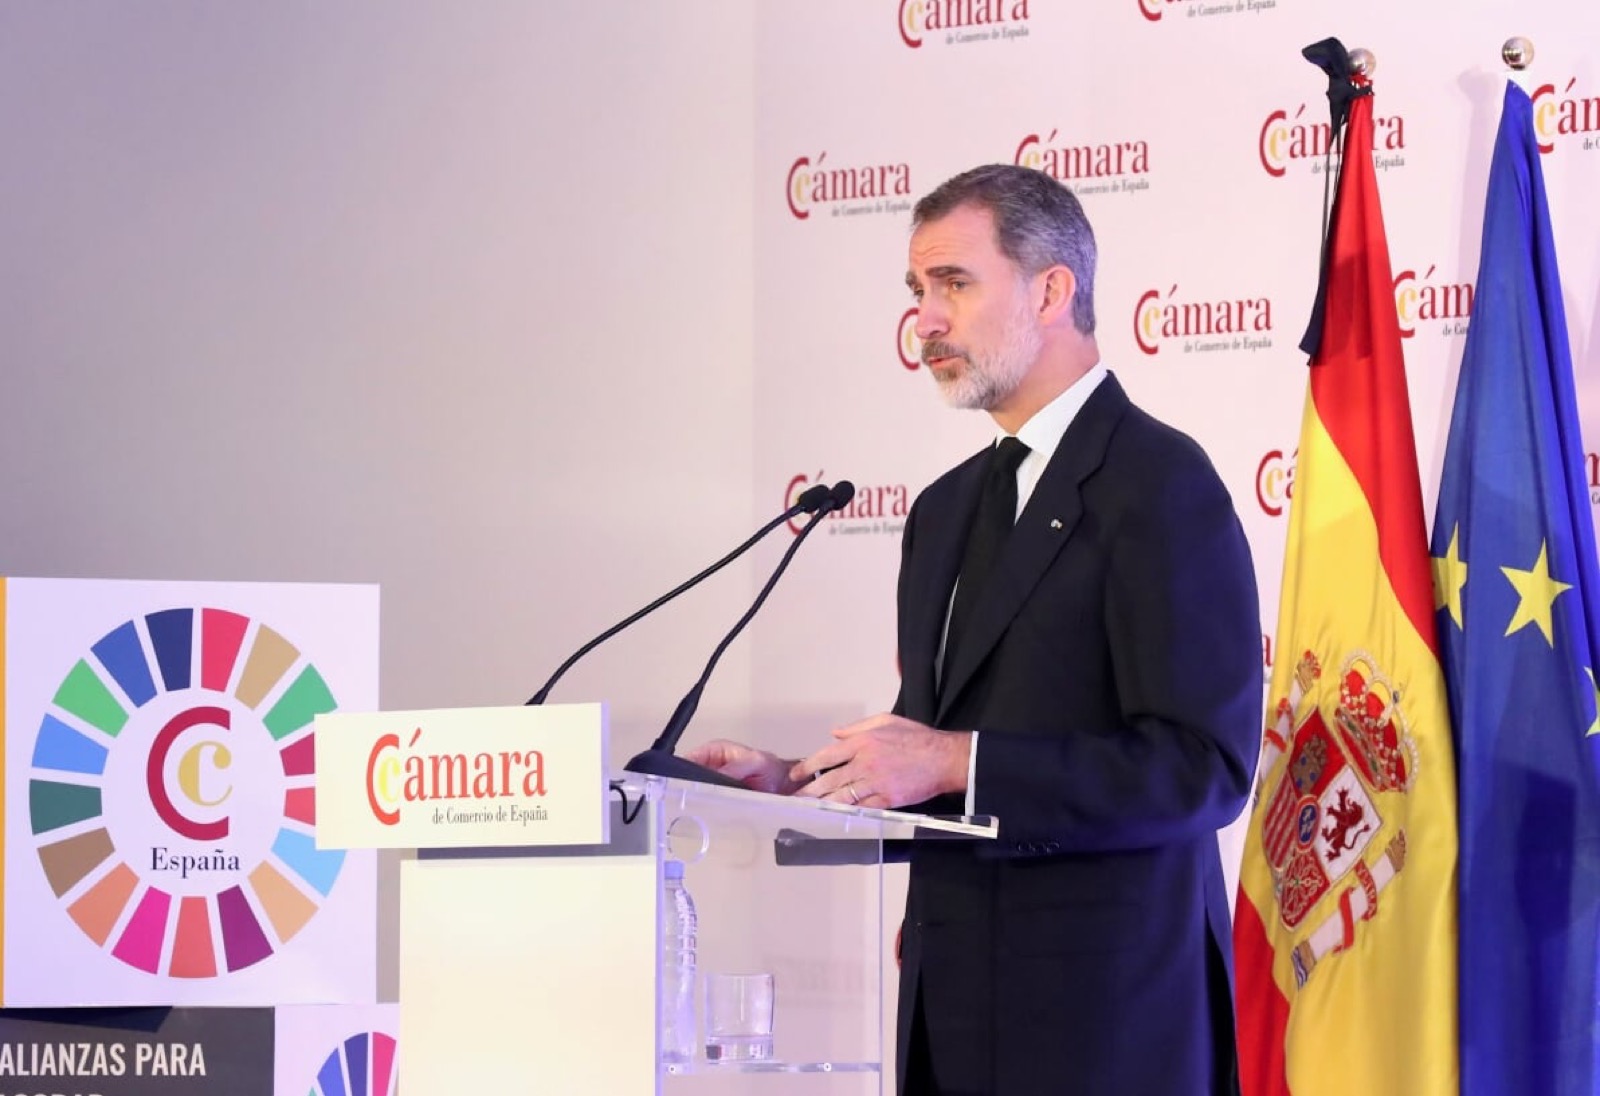 El presidente de la Cámara de Soria, Alberto Santamaría, participa en el Pleno Extraordinario de la Cámara de Comercio de España presidido por el Rey